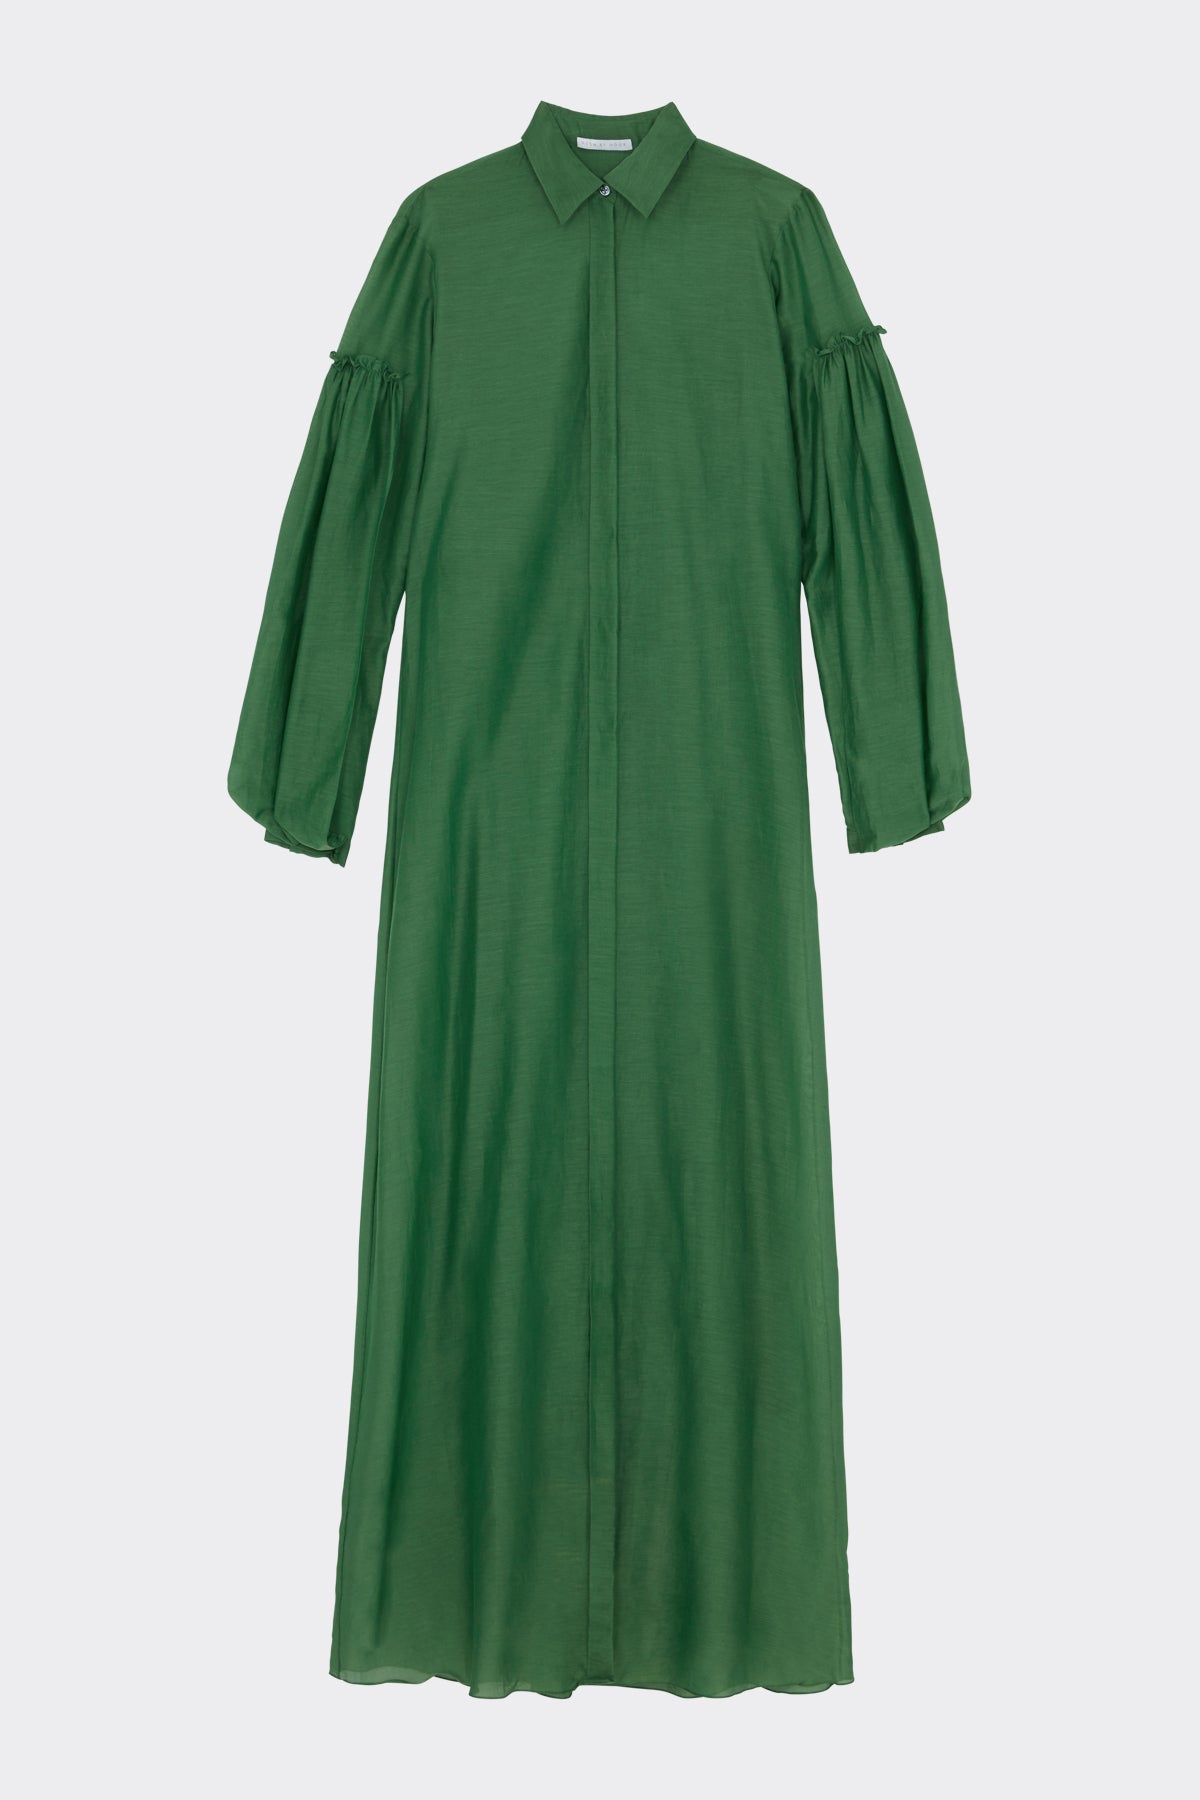 Jolene Dress in Bottle Green| Noon by Noor